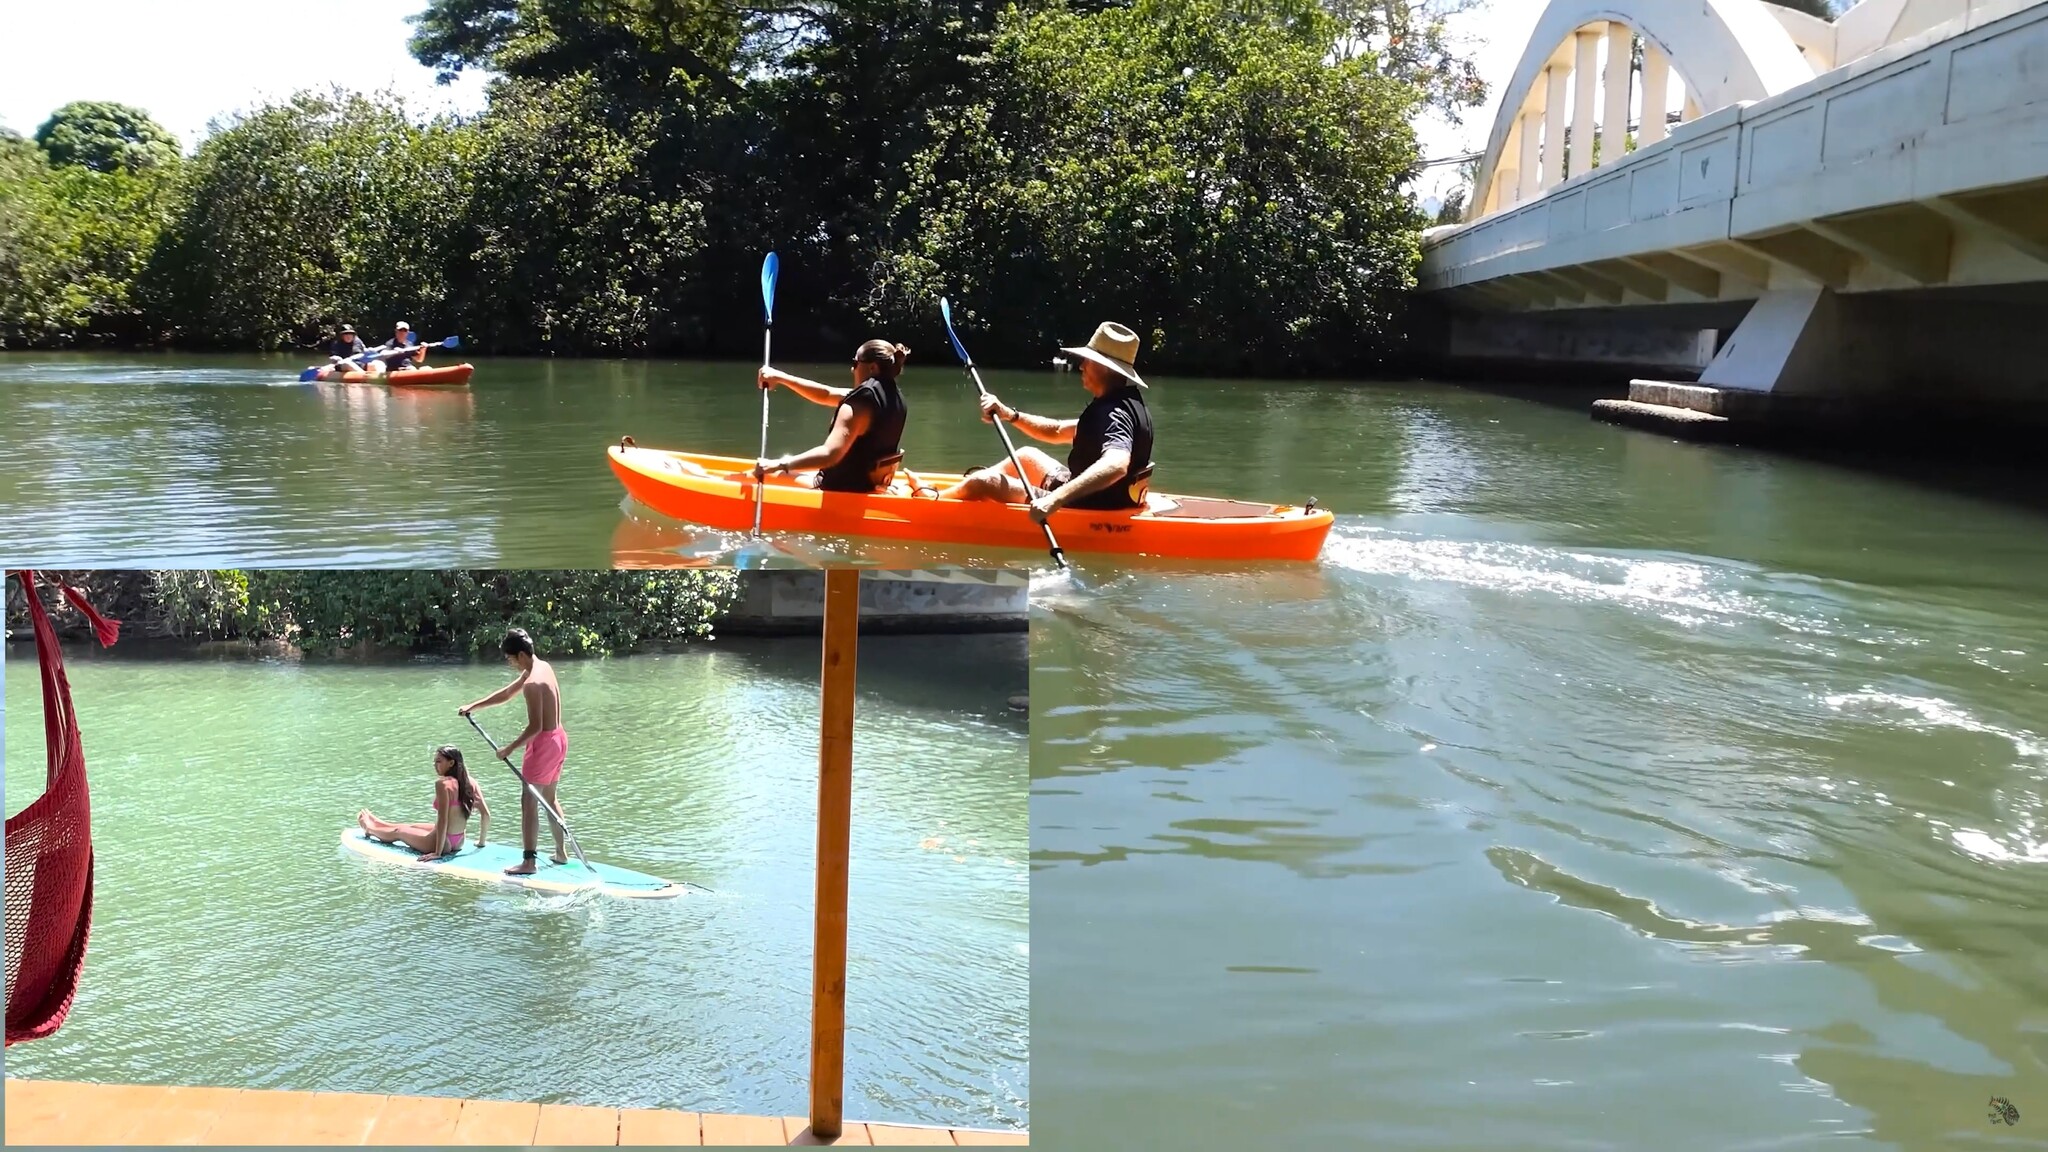 paddling together is easier on a tandem kayak